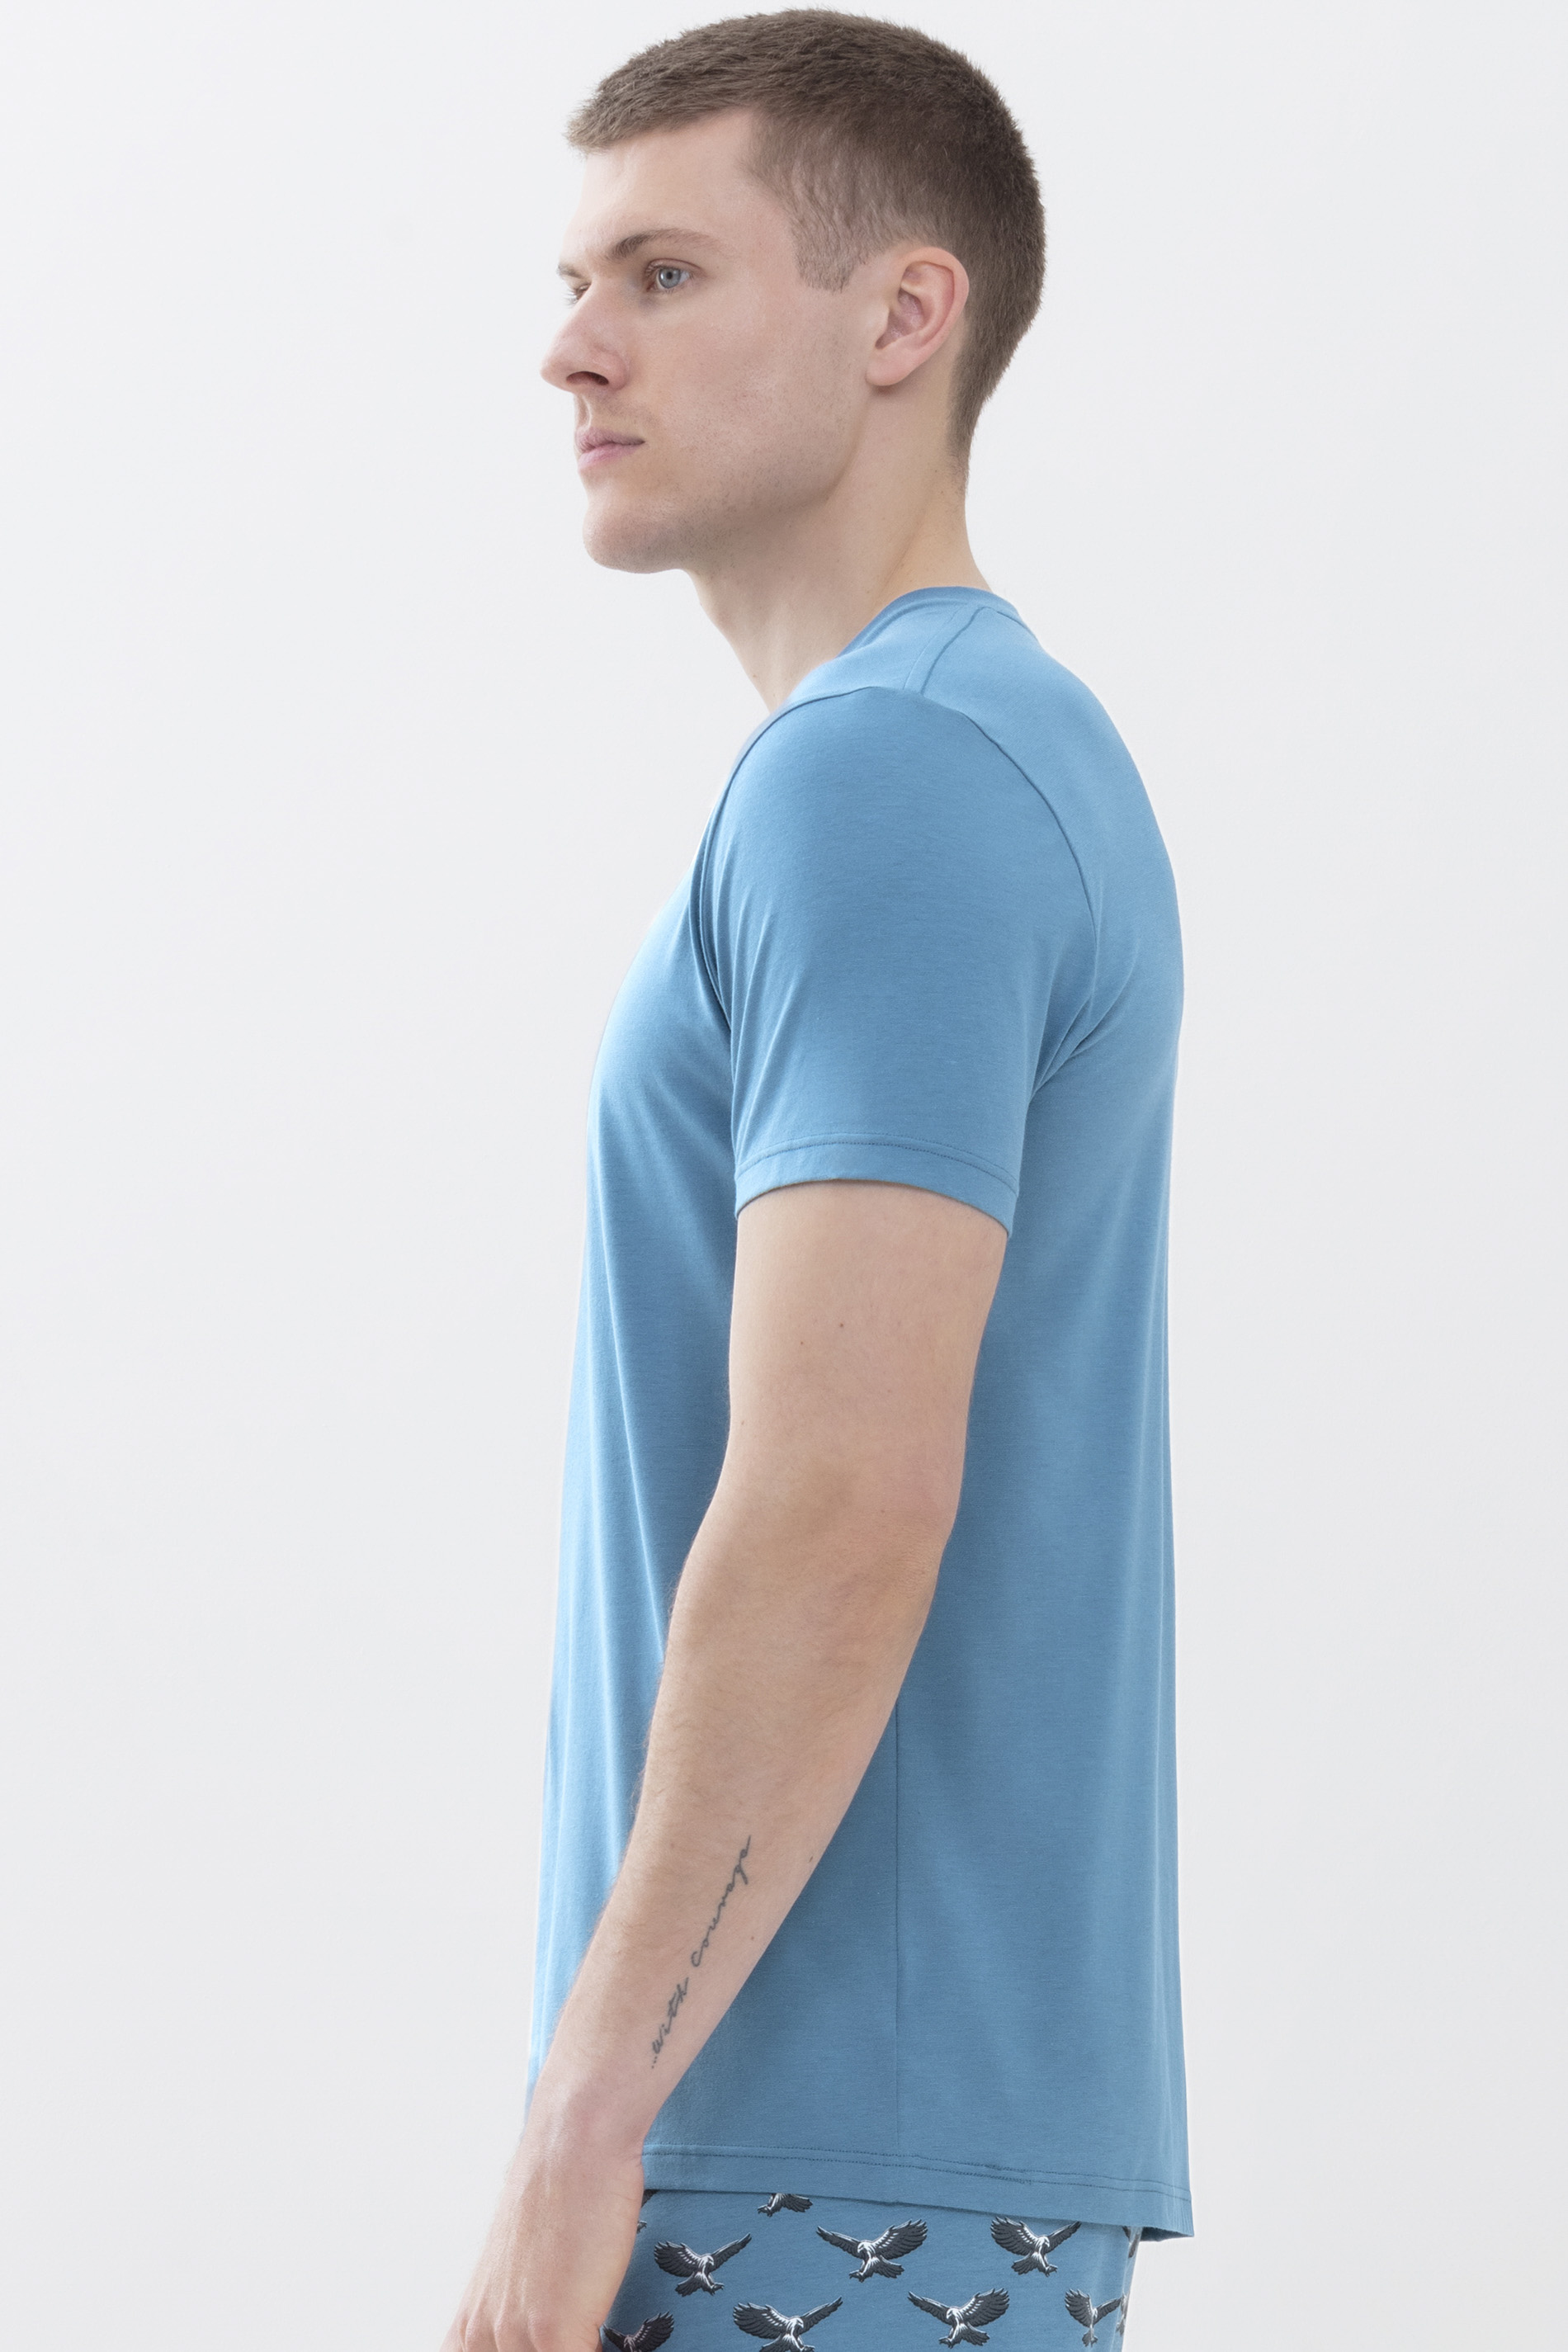 T-shirt Yale Blue Dry Cotton Colour Detail View 02 | mey®